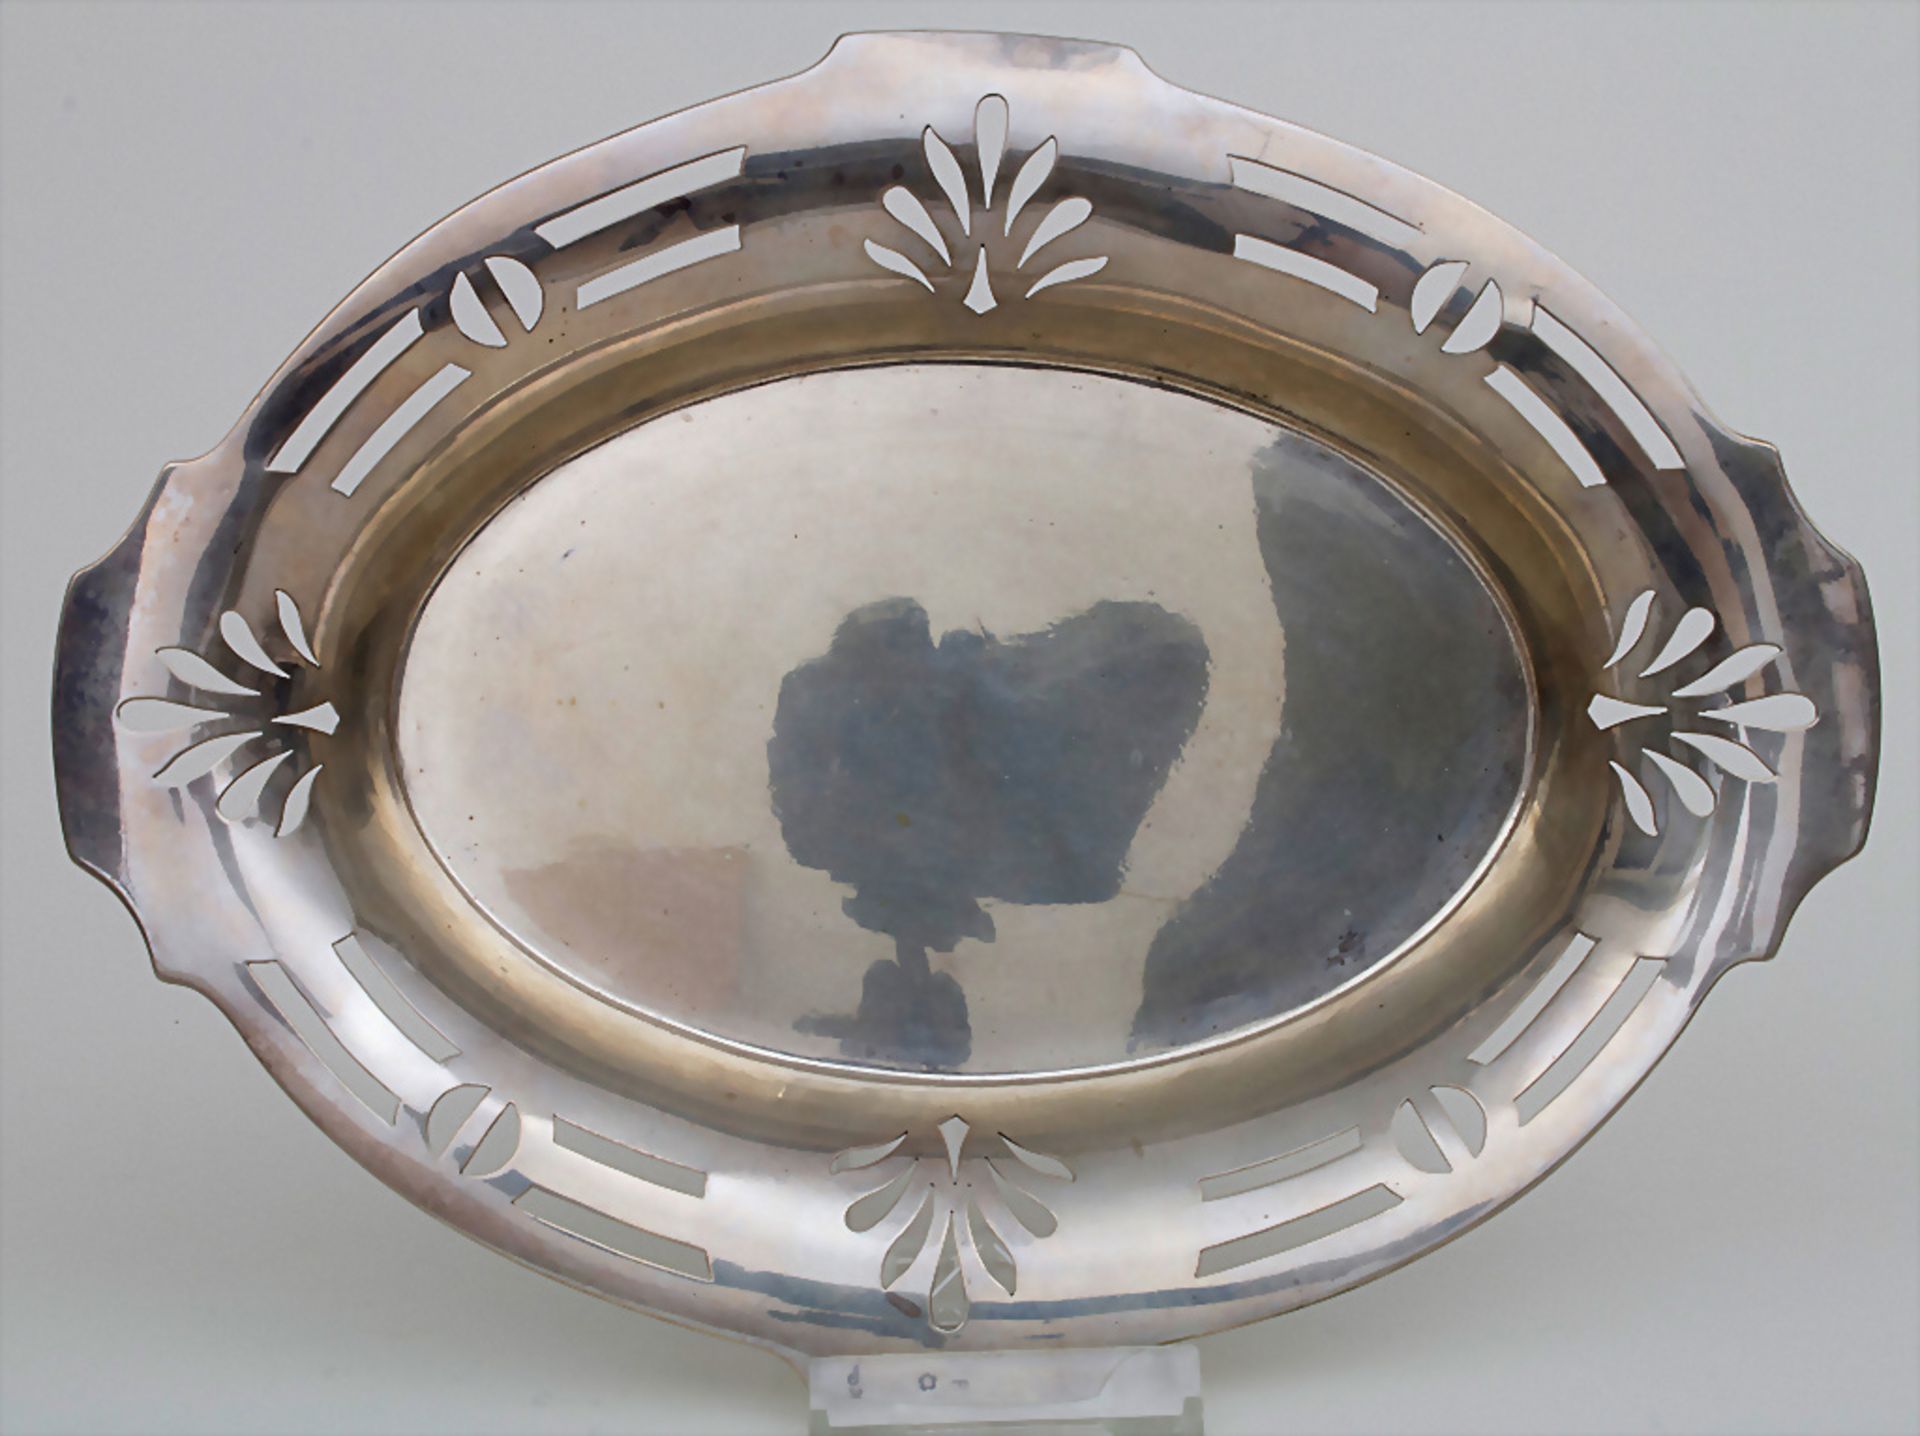 Ovale Jugendstil Silberschale / An oval Art Nouveau silver bowl, Wien / Vienna, um 1900